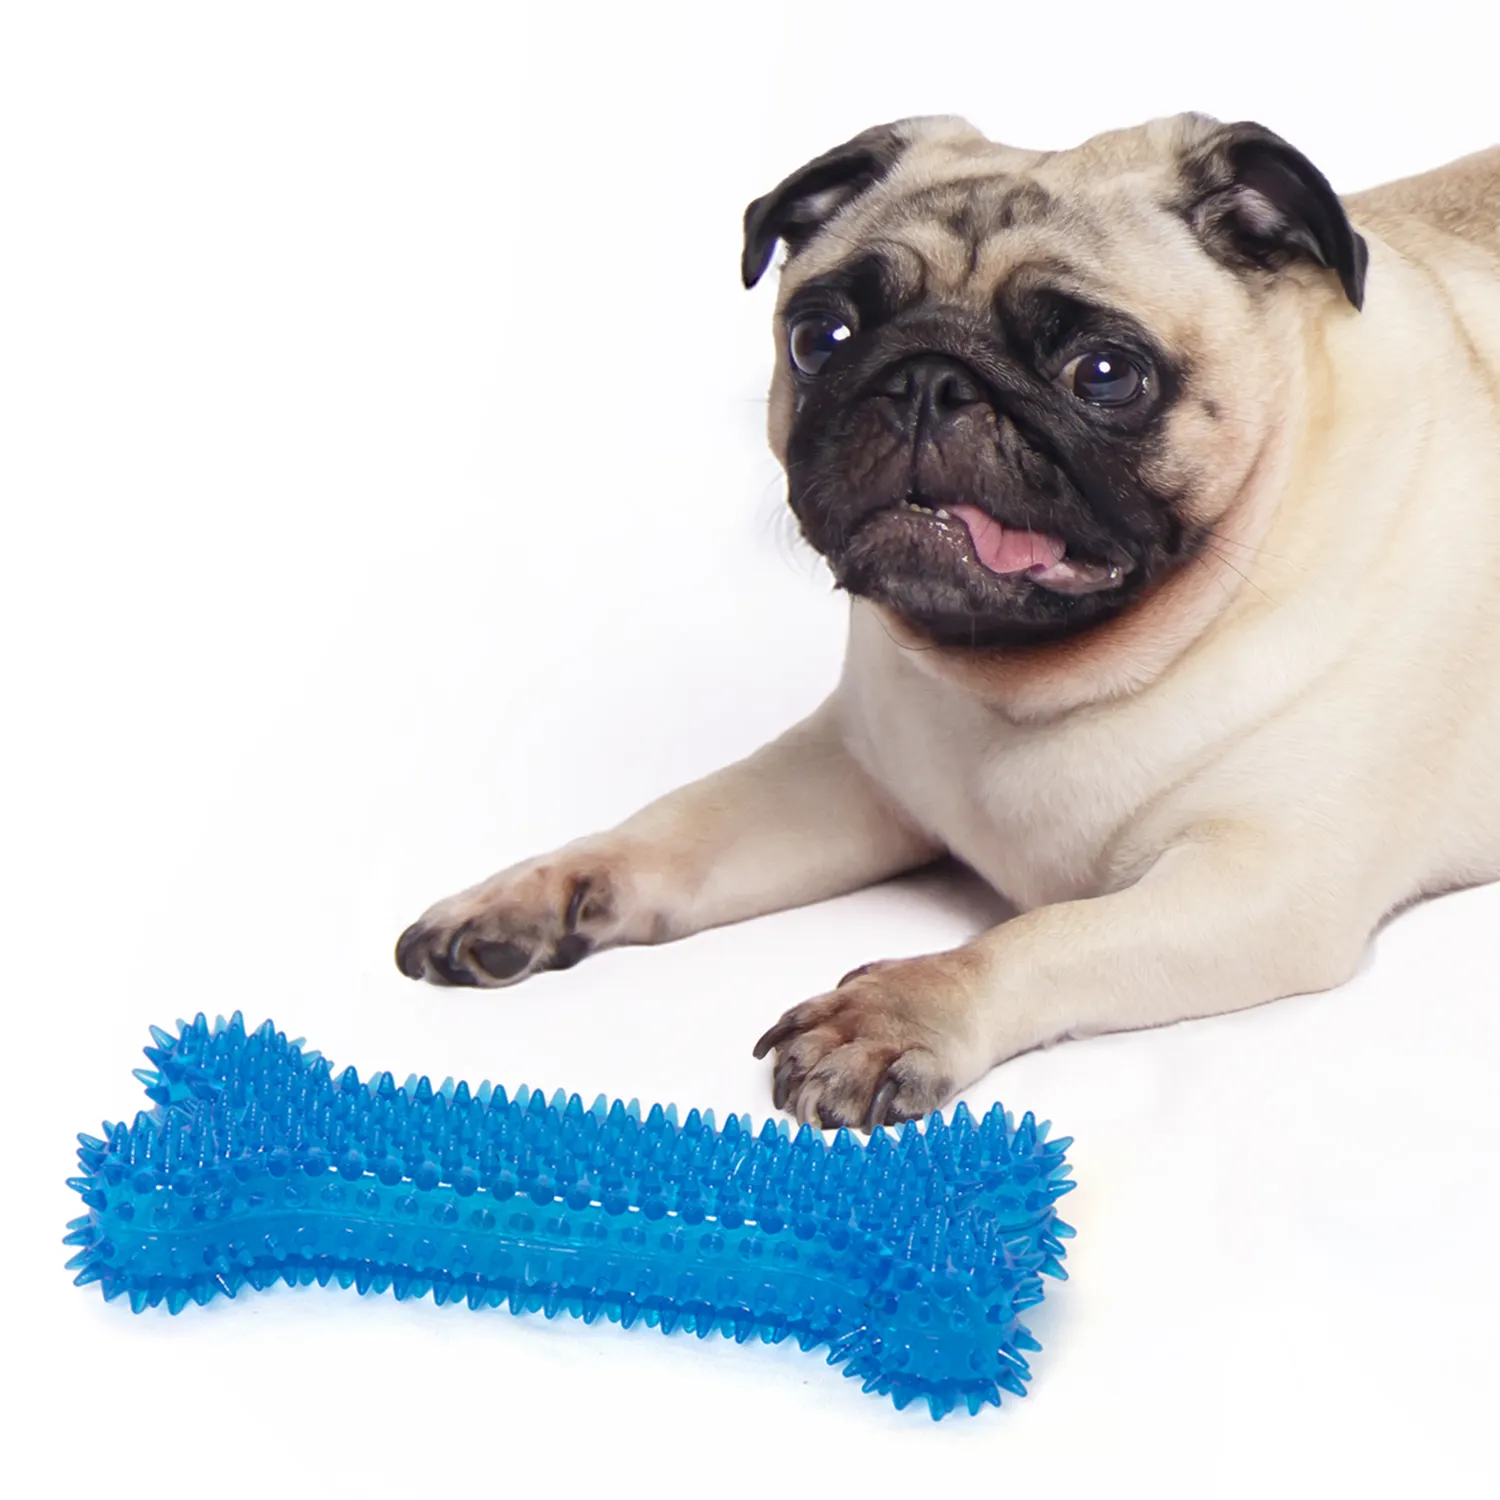 Bestseller Hundeknickelspielzeug TPR Knochen groß + Quietscher Haustier-Knickelspielzeug grün